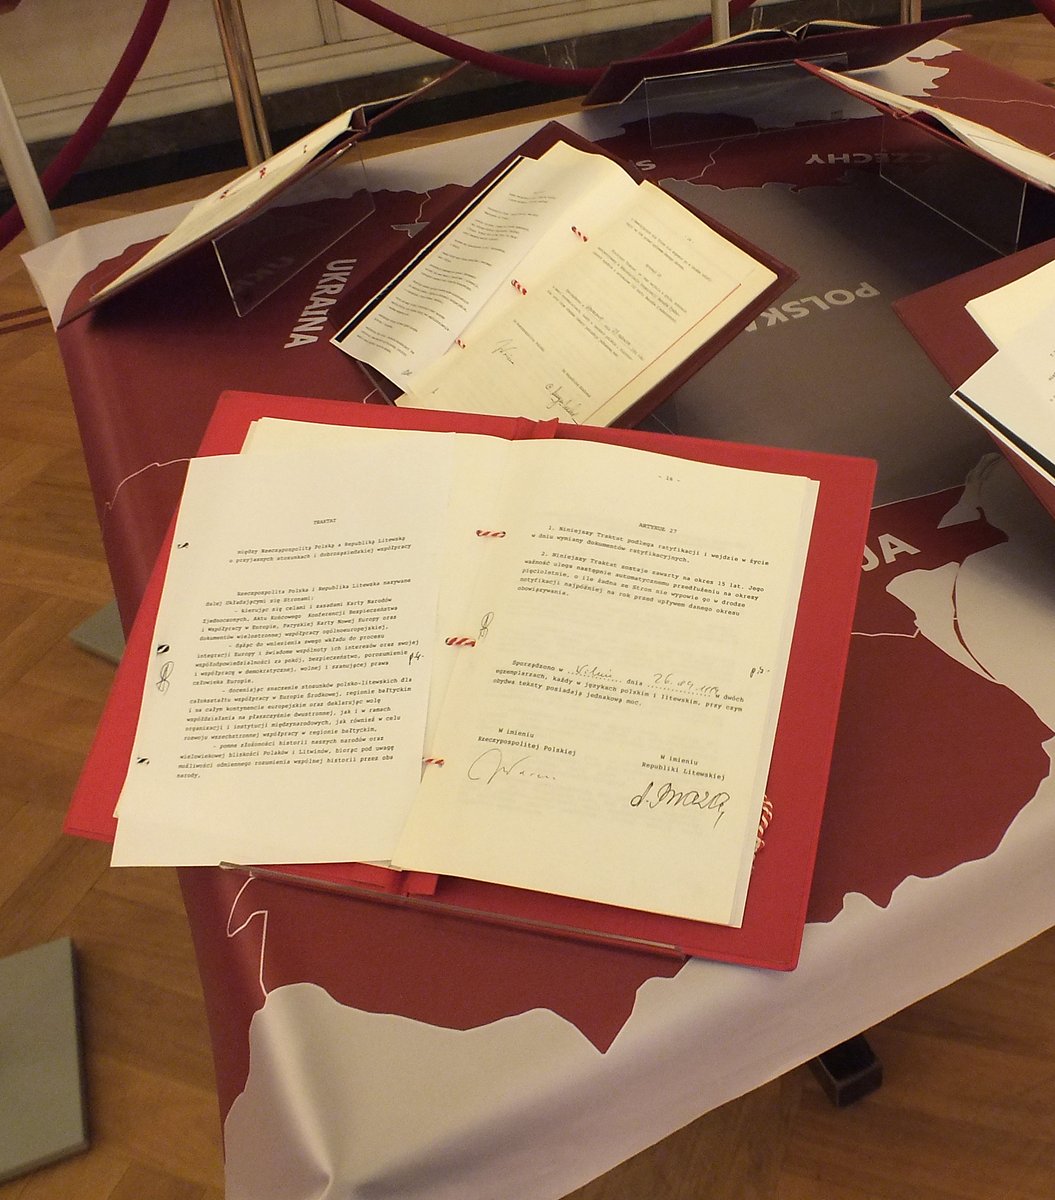 30 lat temu - 26 IV 1994 - w czasie wizyty prezydenta Lecha Wałęsy w Wilnie - podpisano Traktat między Rzecząpospolitą Polską a Republiką Litewską o przyjaznych stosunkach i dobrosąsiedzkiej współpracy.